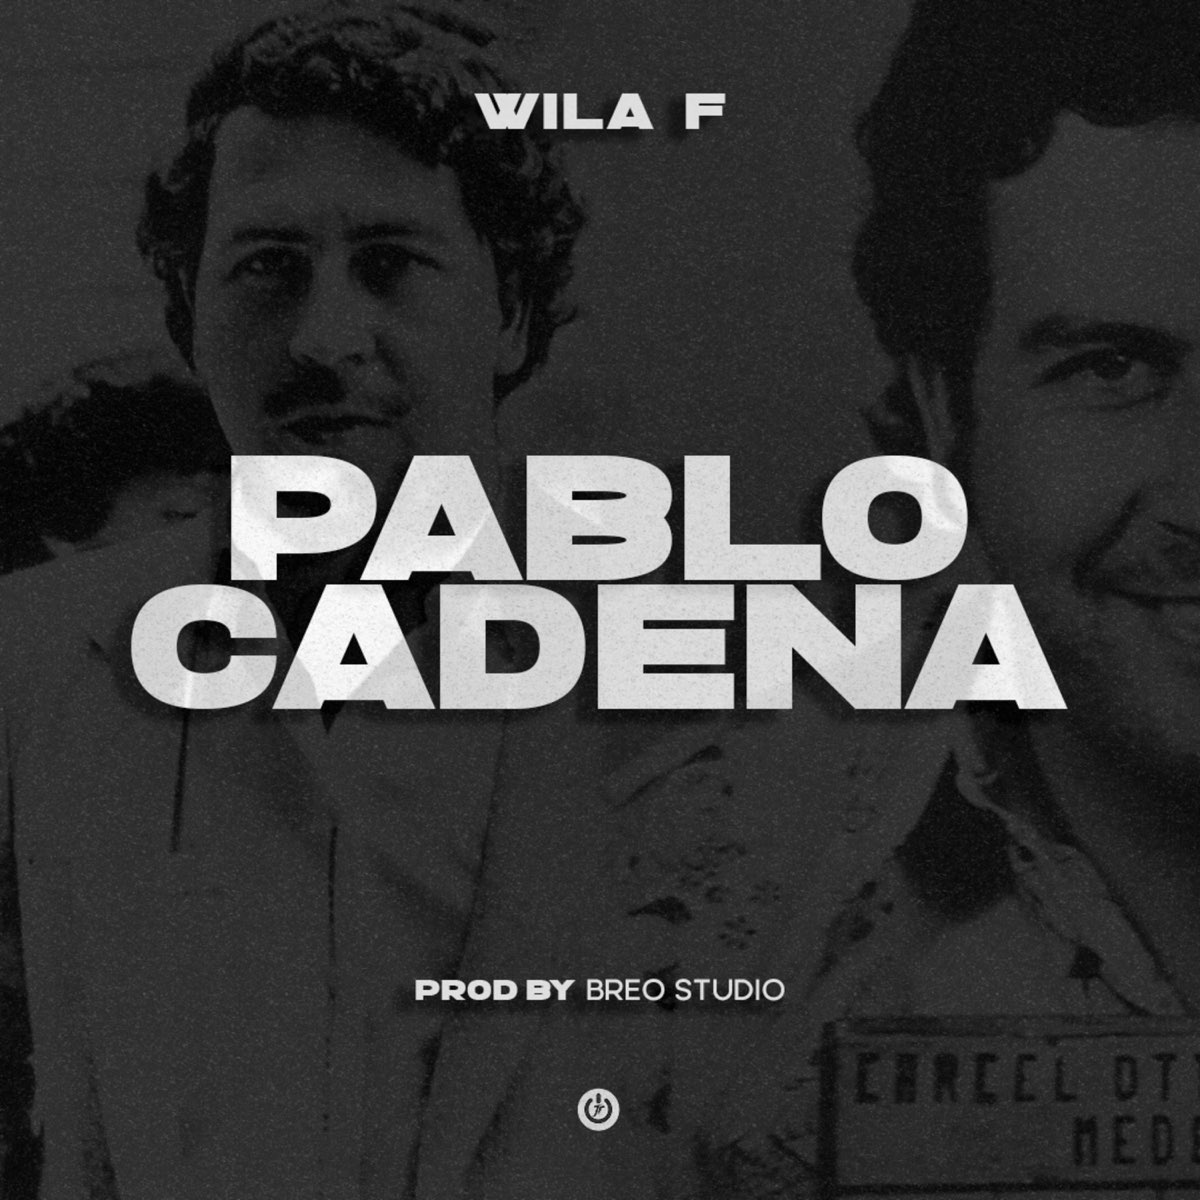 Pablo Escobar Cadena - Single de Wila F en Apple Music